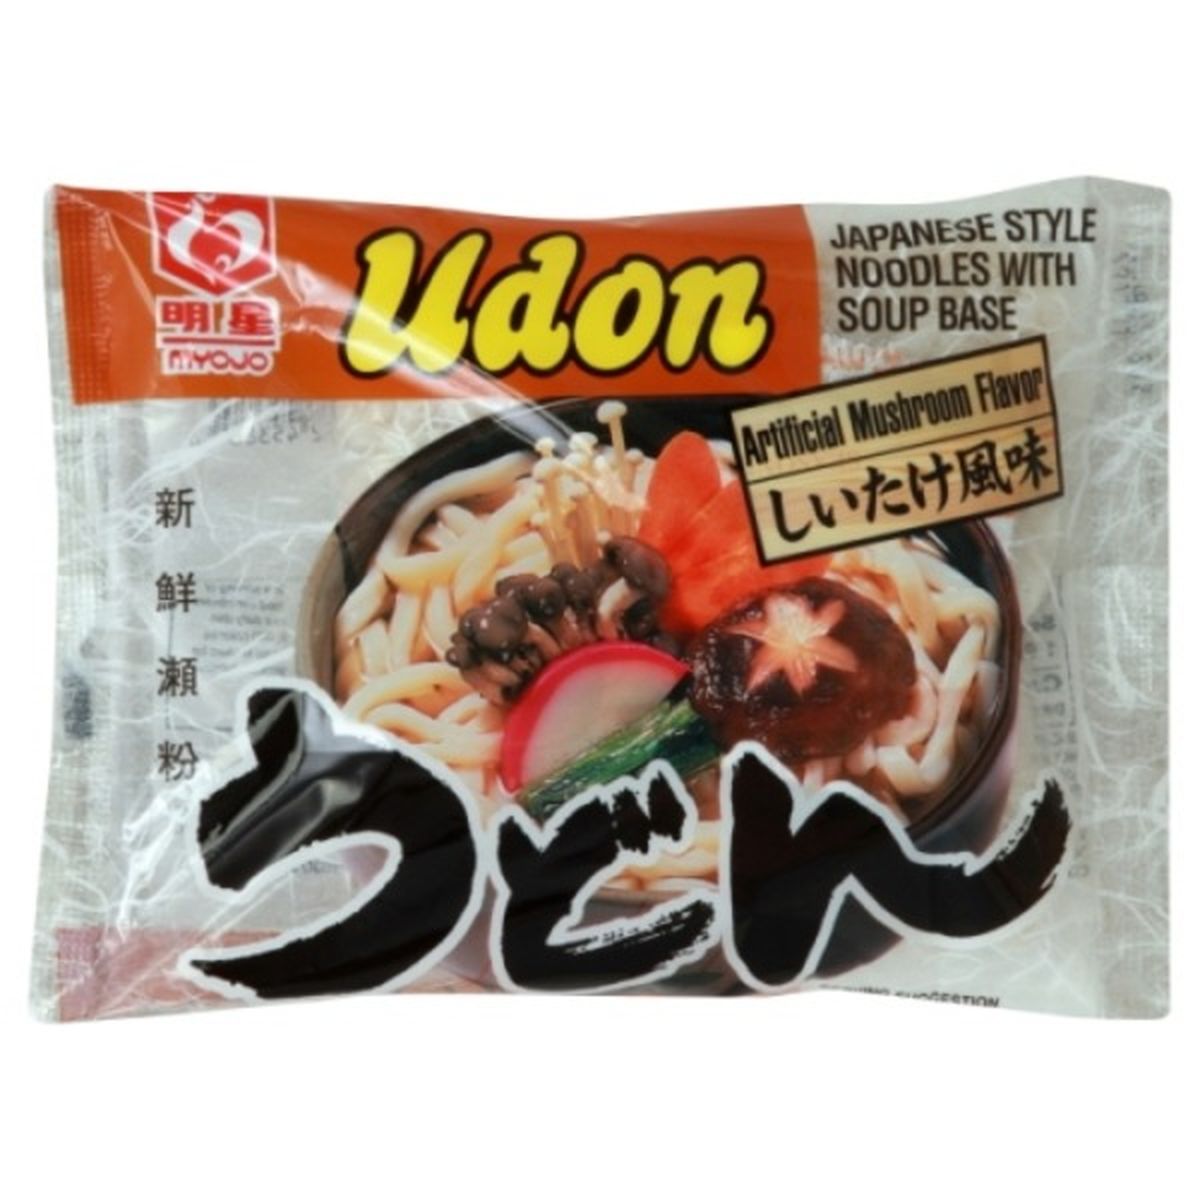 Calories in Myojo Udon, Artificial Mushroom Flavor